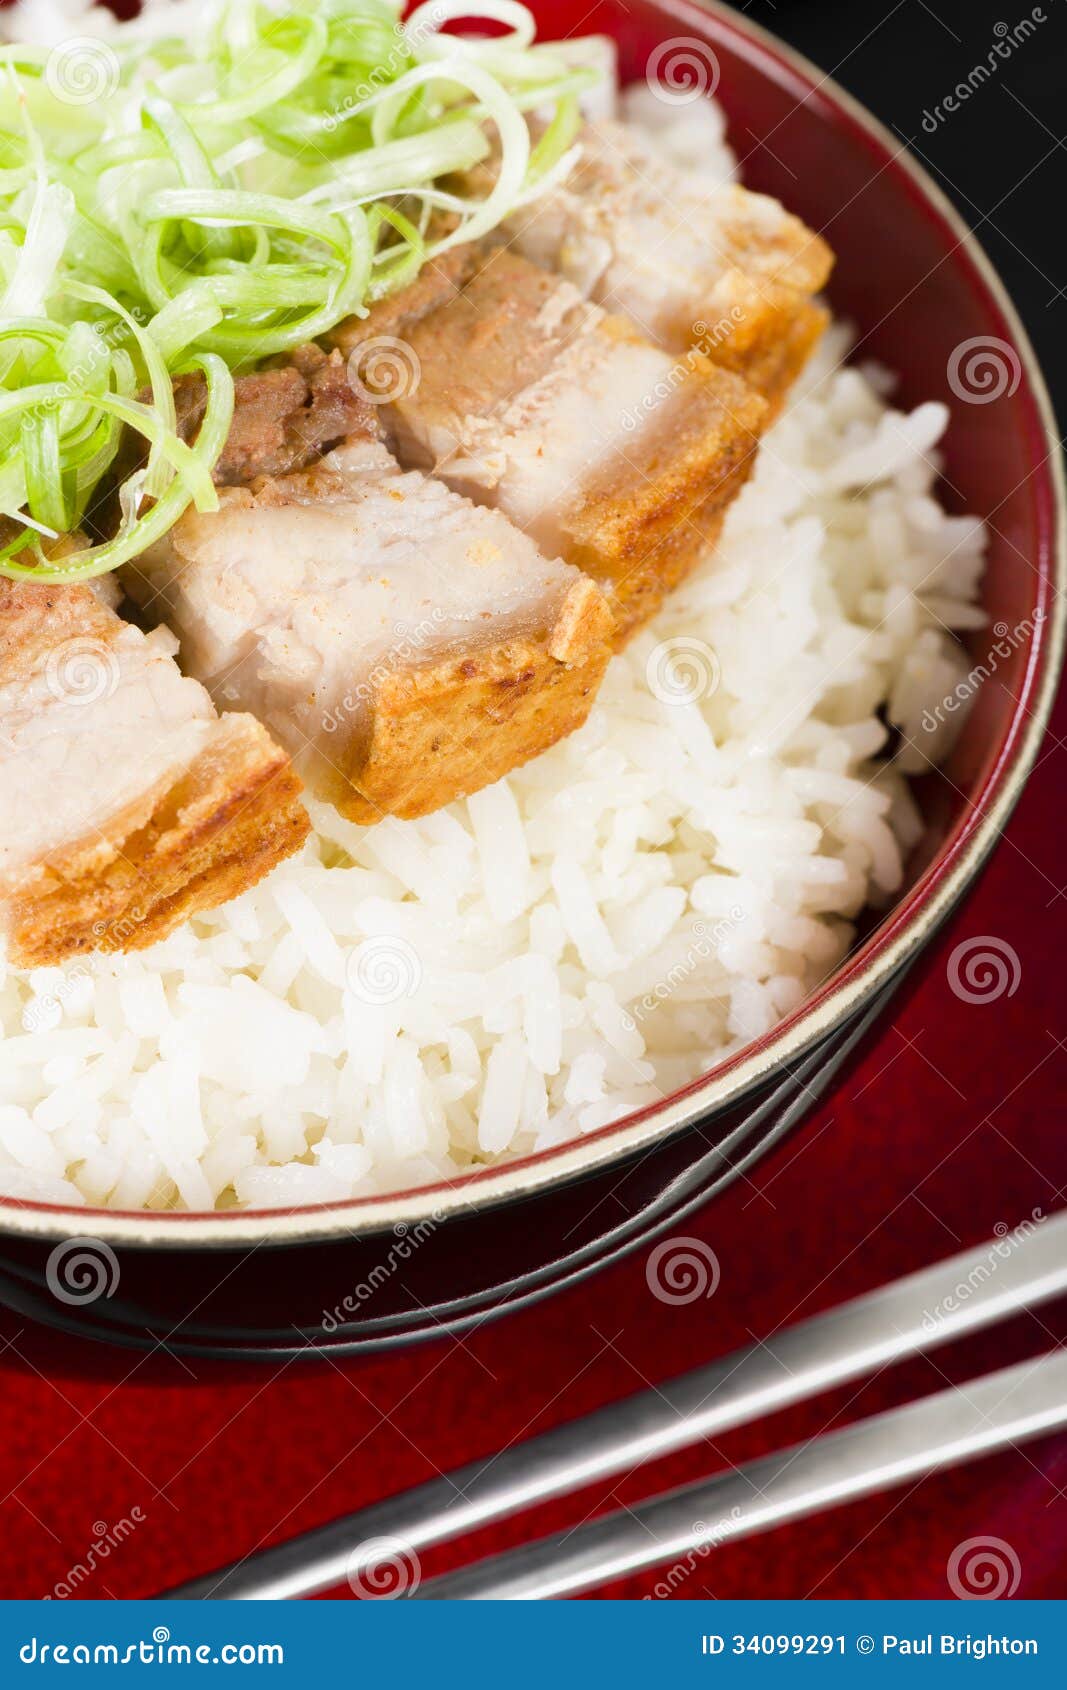 Siu Yuk stock image. Image of dish, chinese, belly, onions - 34099291